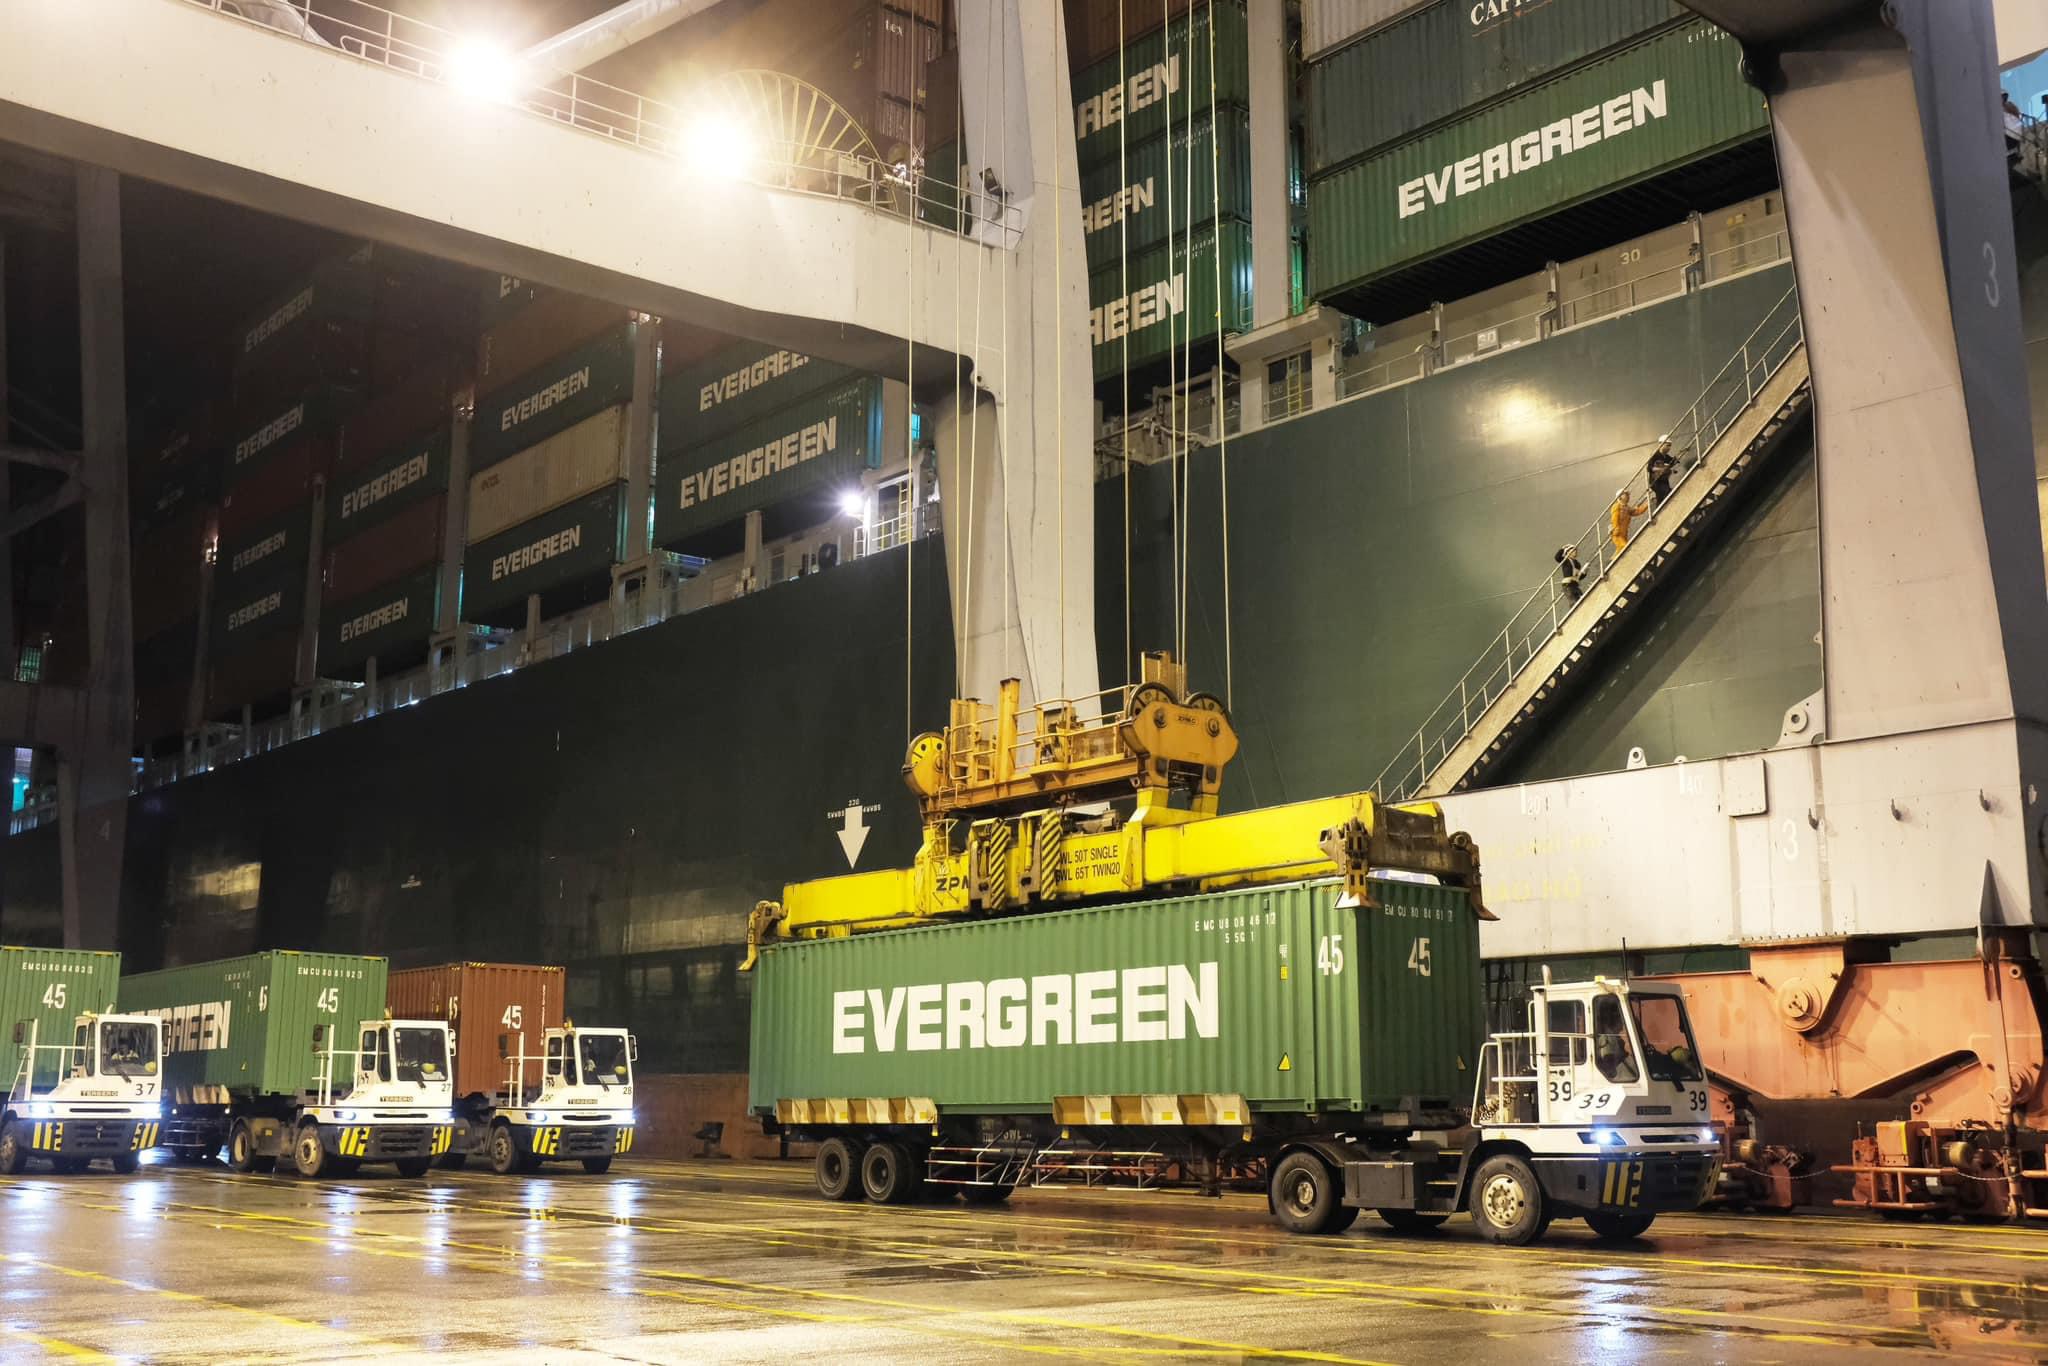 Tại cảng CMIT, 5 cẩu bờ đang làm việc nhịp nhàng dưới sự vận hành của công nhân để xếp dỡ  từ tàu TALOS trọng tải 153.500 DWT do hãng tàu Evergreen khai thác trên tuyến dịch vụ AUE  đi bờ Đông nước Mỹ.